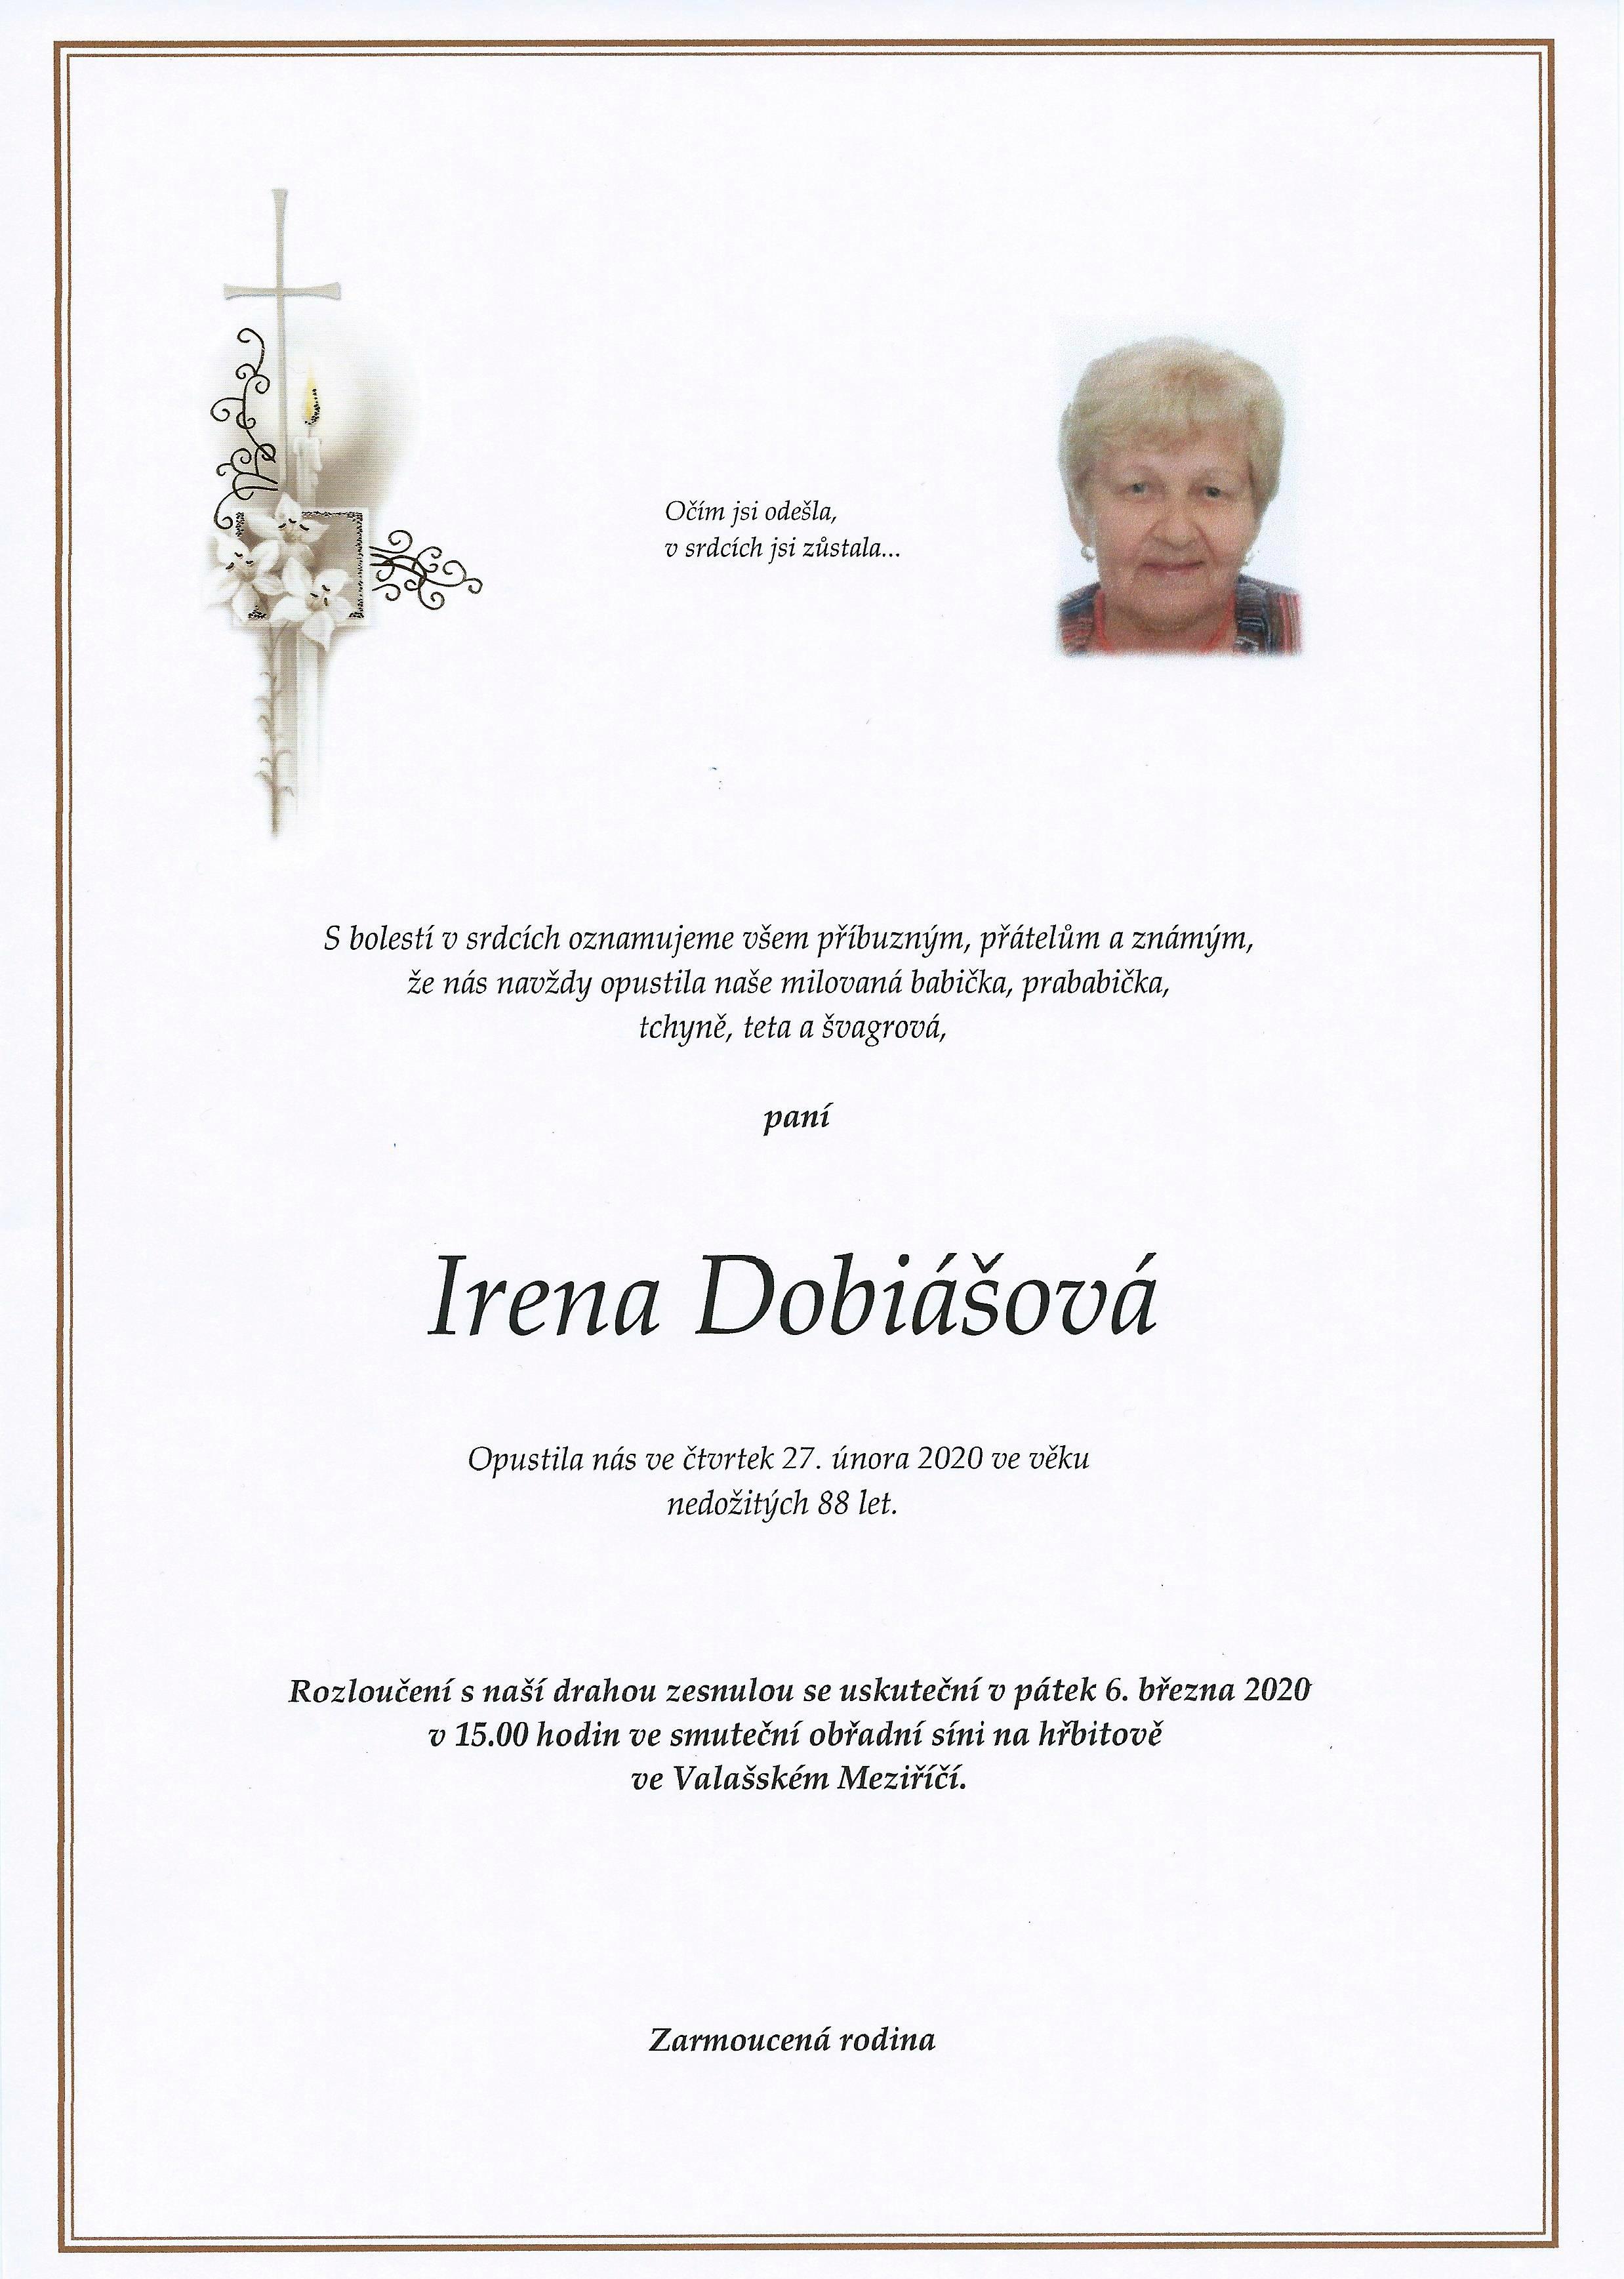 Irena Dobiášová